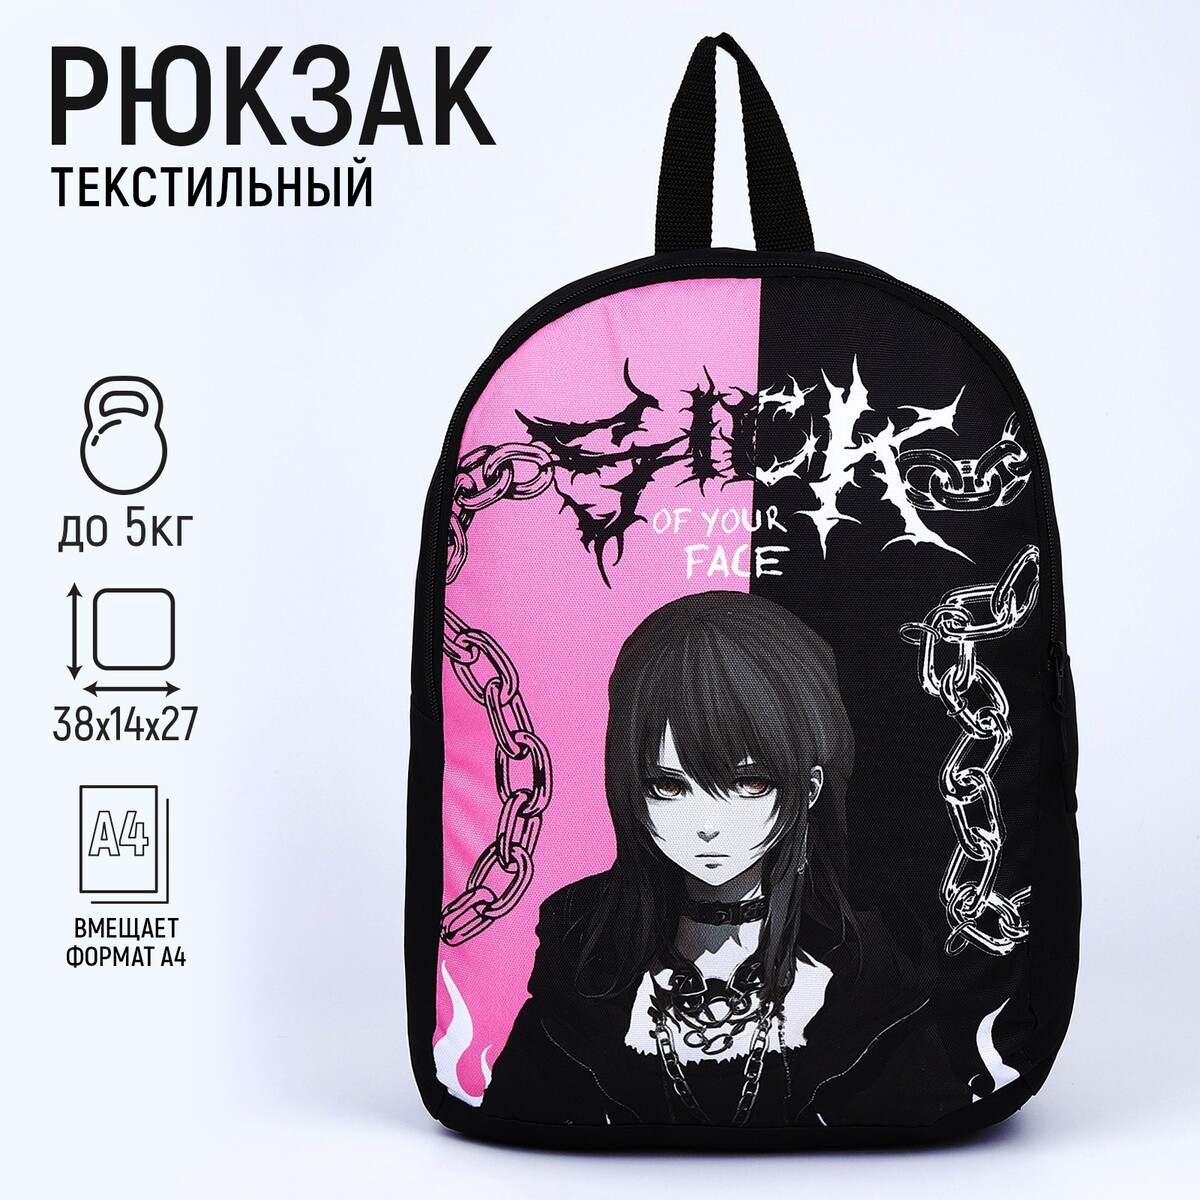 Рюкзак текстильный аниме, 38х14х27 см, цвет черный, розовый рюкзак текстильный аниме глаза 38х14х27 см